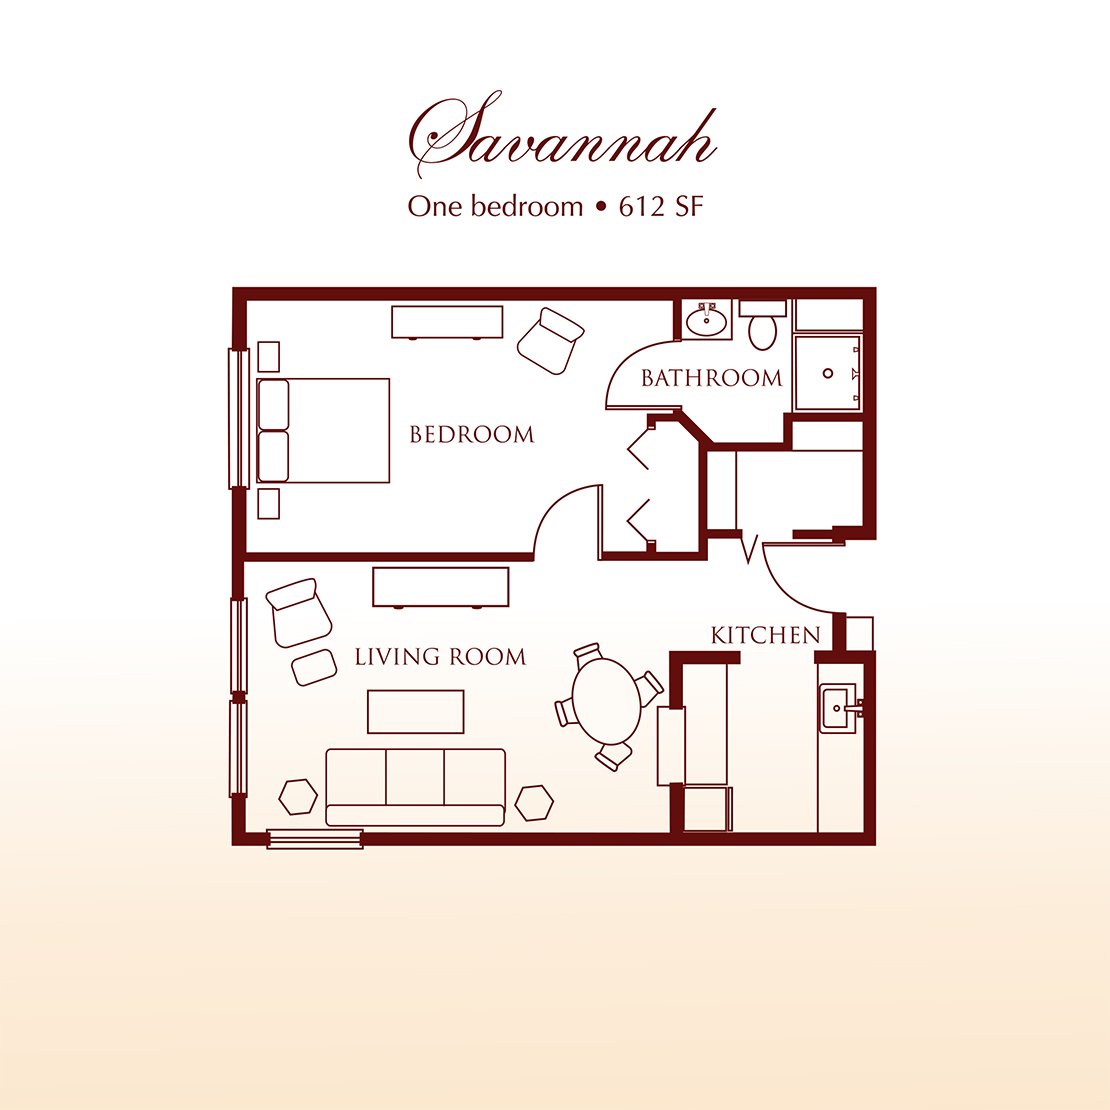 Floor plan - The Savannah One Bedroom Suite at DeTray's Colonial Inn